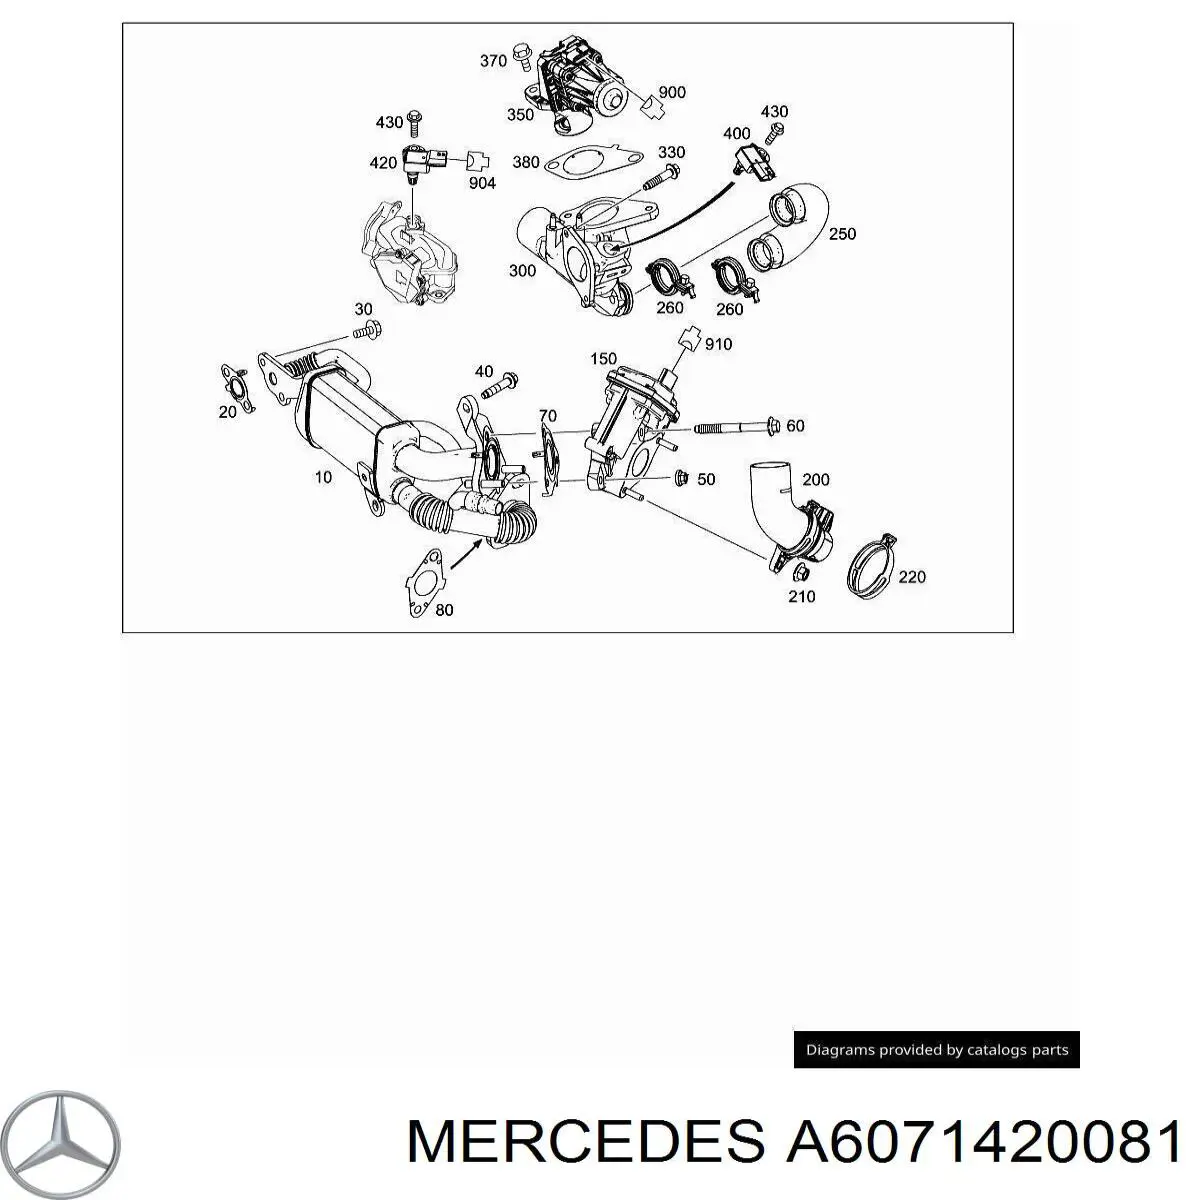 A6071420081 Mercedes vedante de cano derivado egr até a cabeça de bloco (cbc)